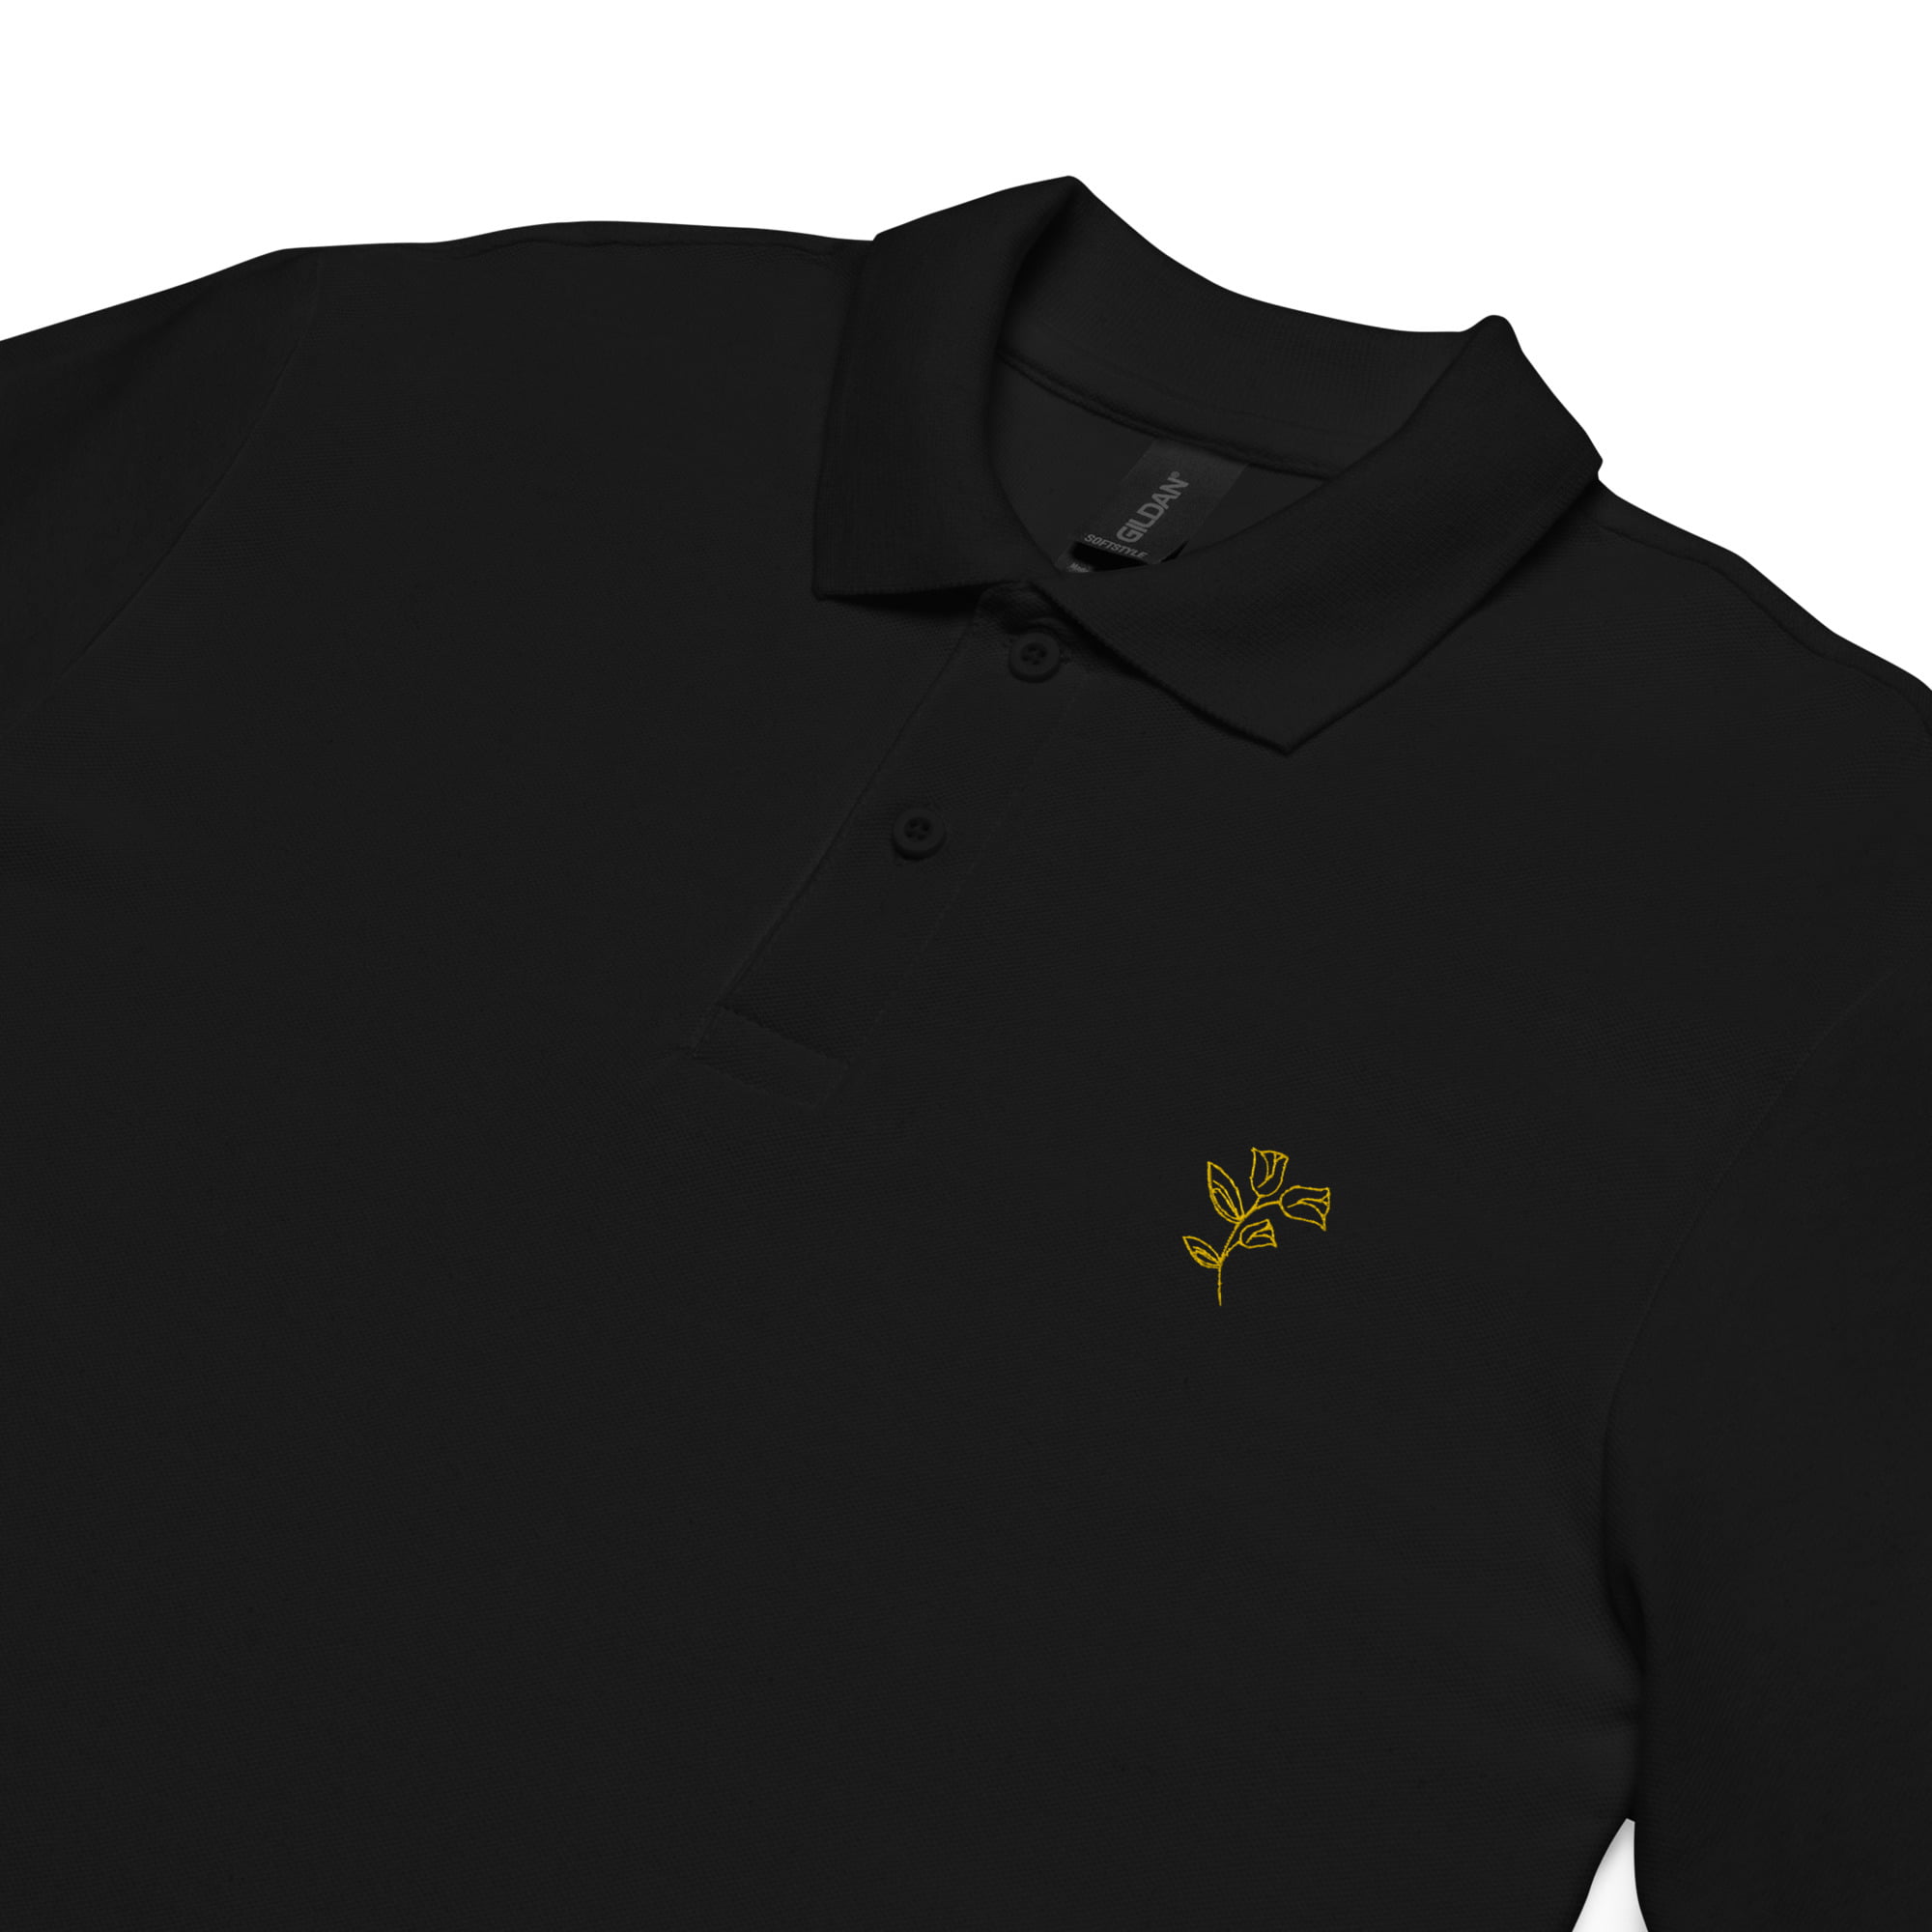 unisex pique polo shirt black product details 6475c6f81ec6f